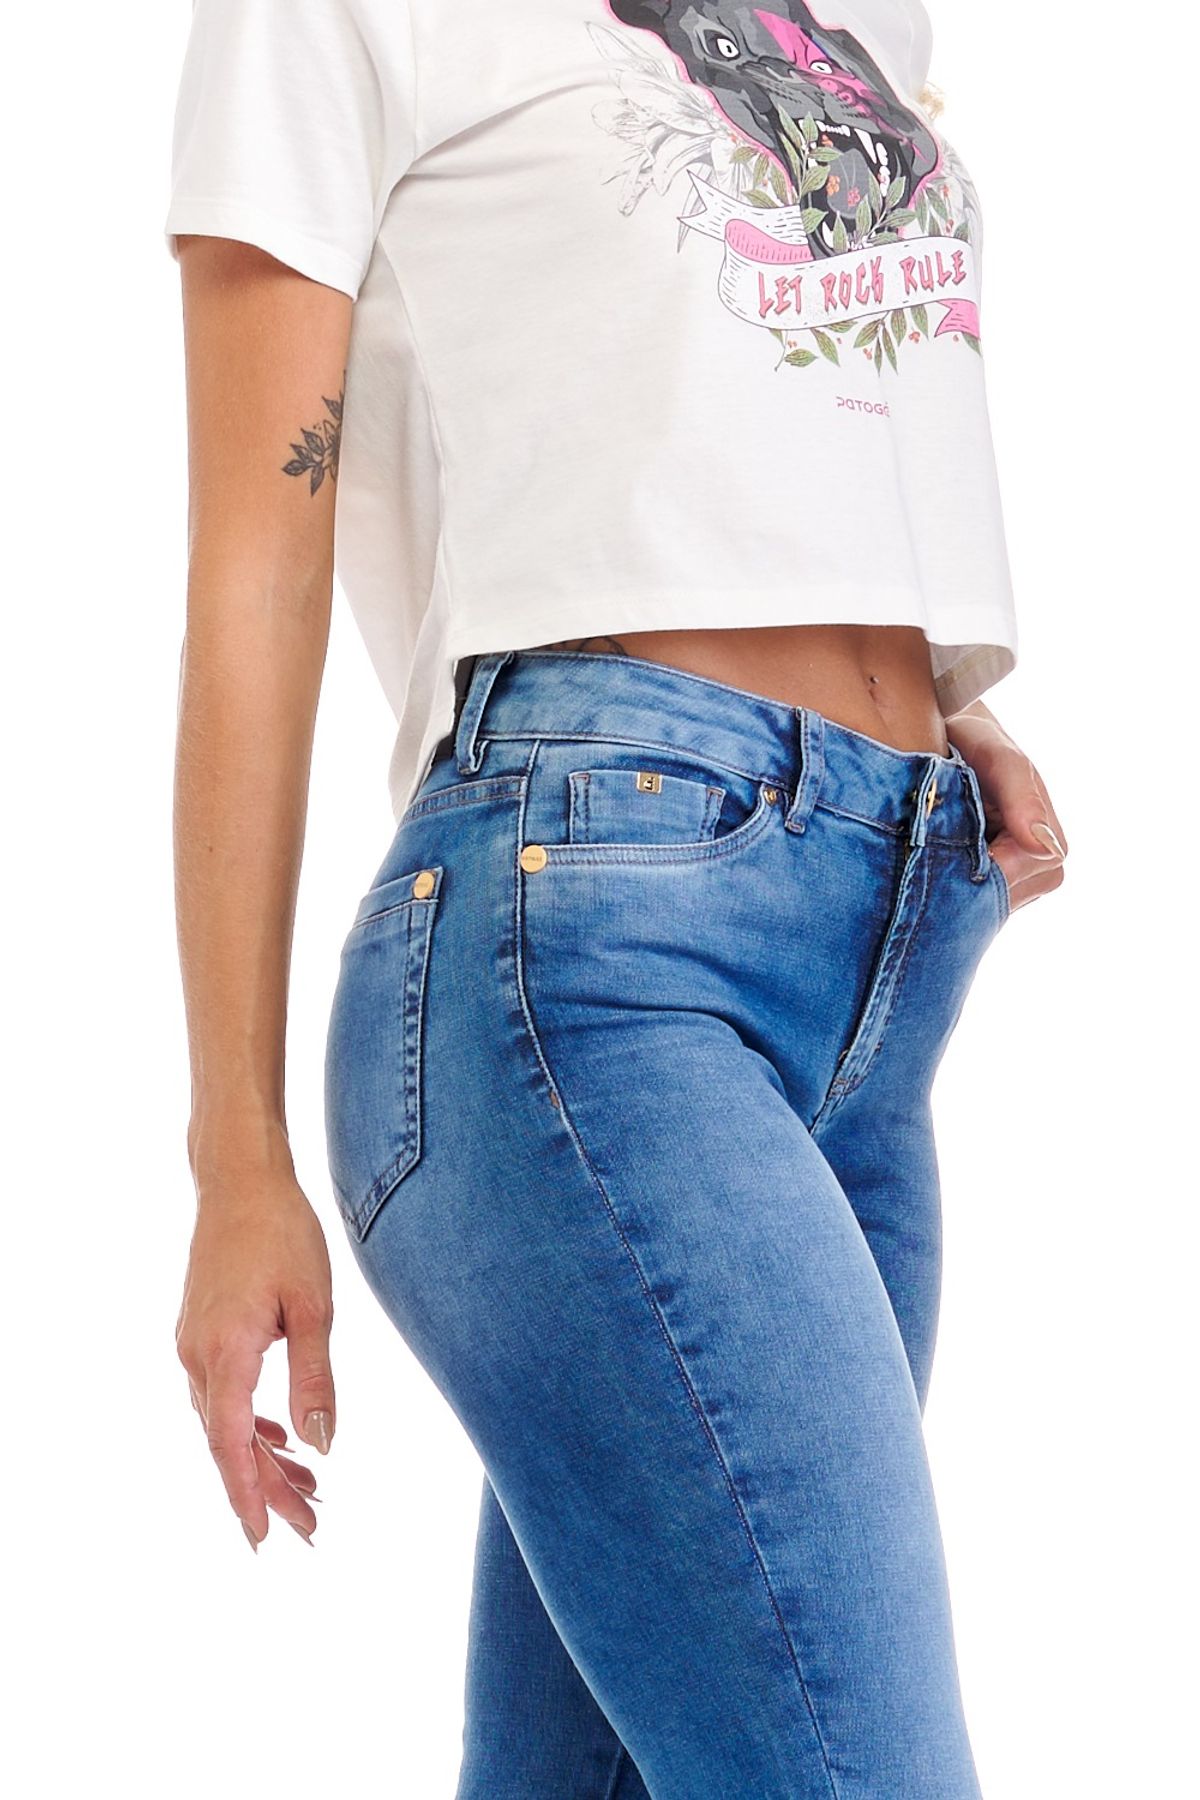 Calça Patogê feminina flare curvy jeans cintura média (G3) CL37135